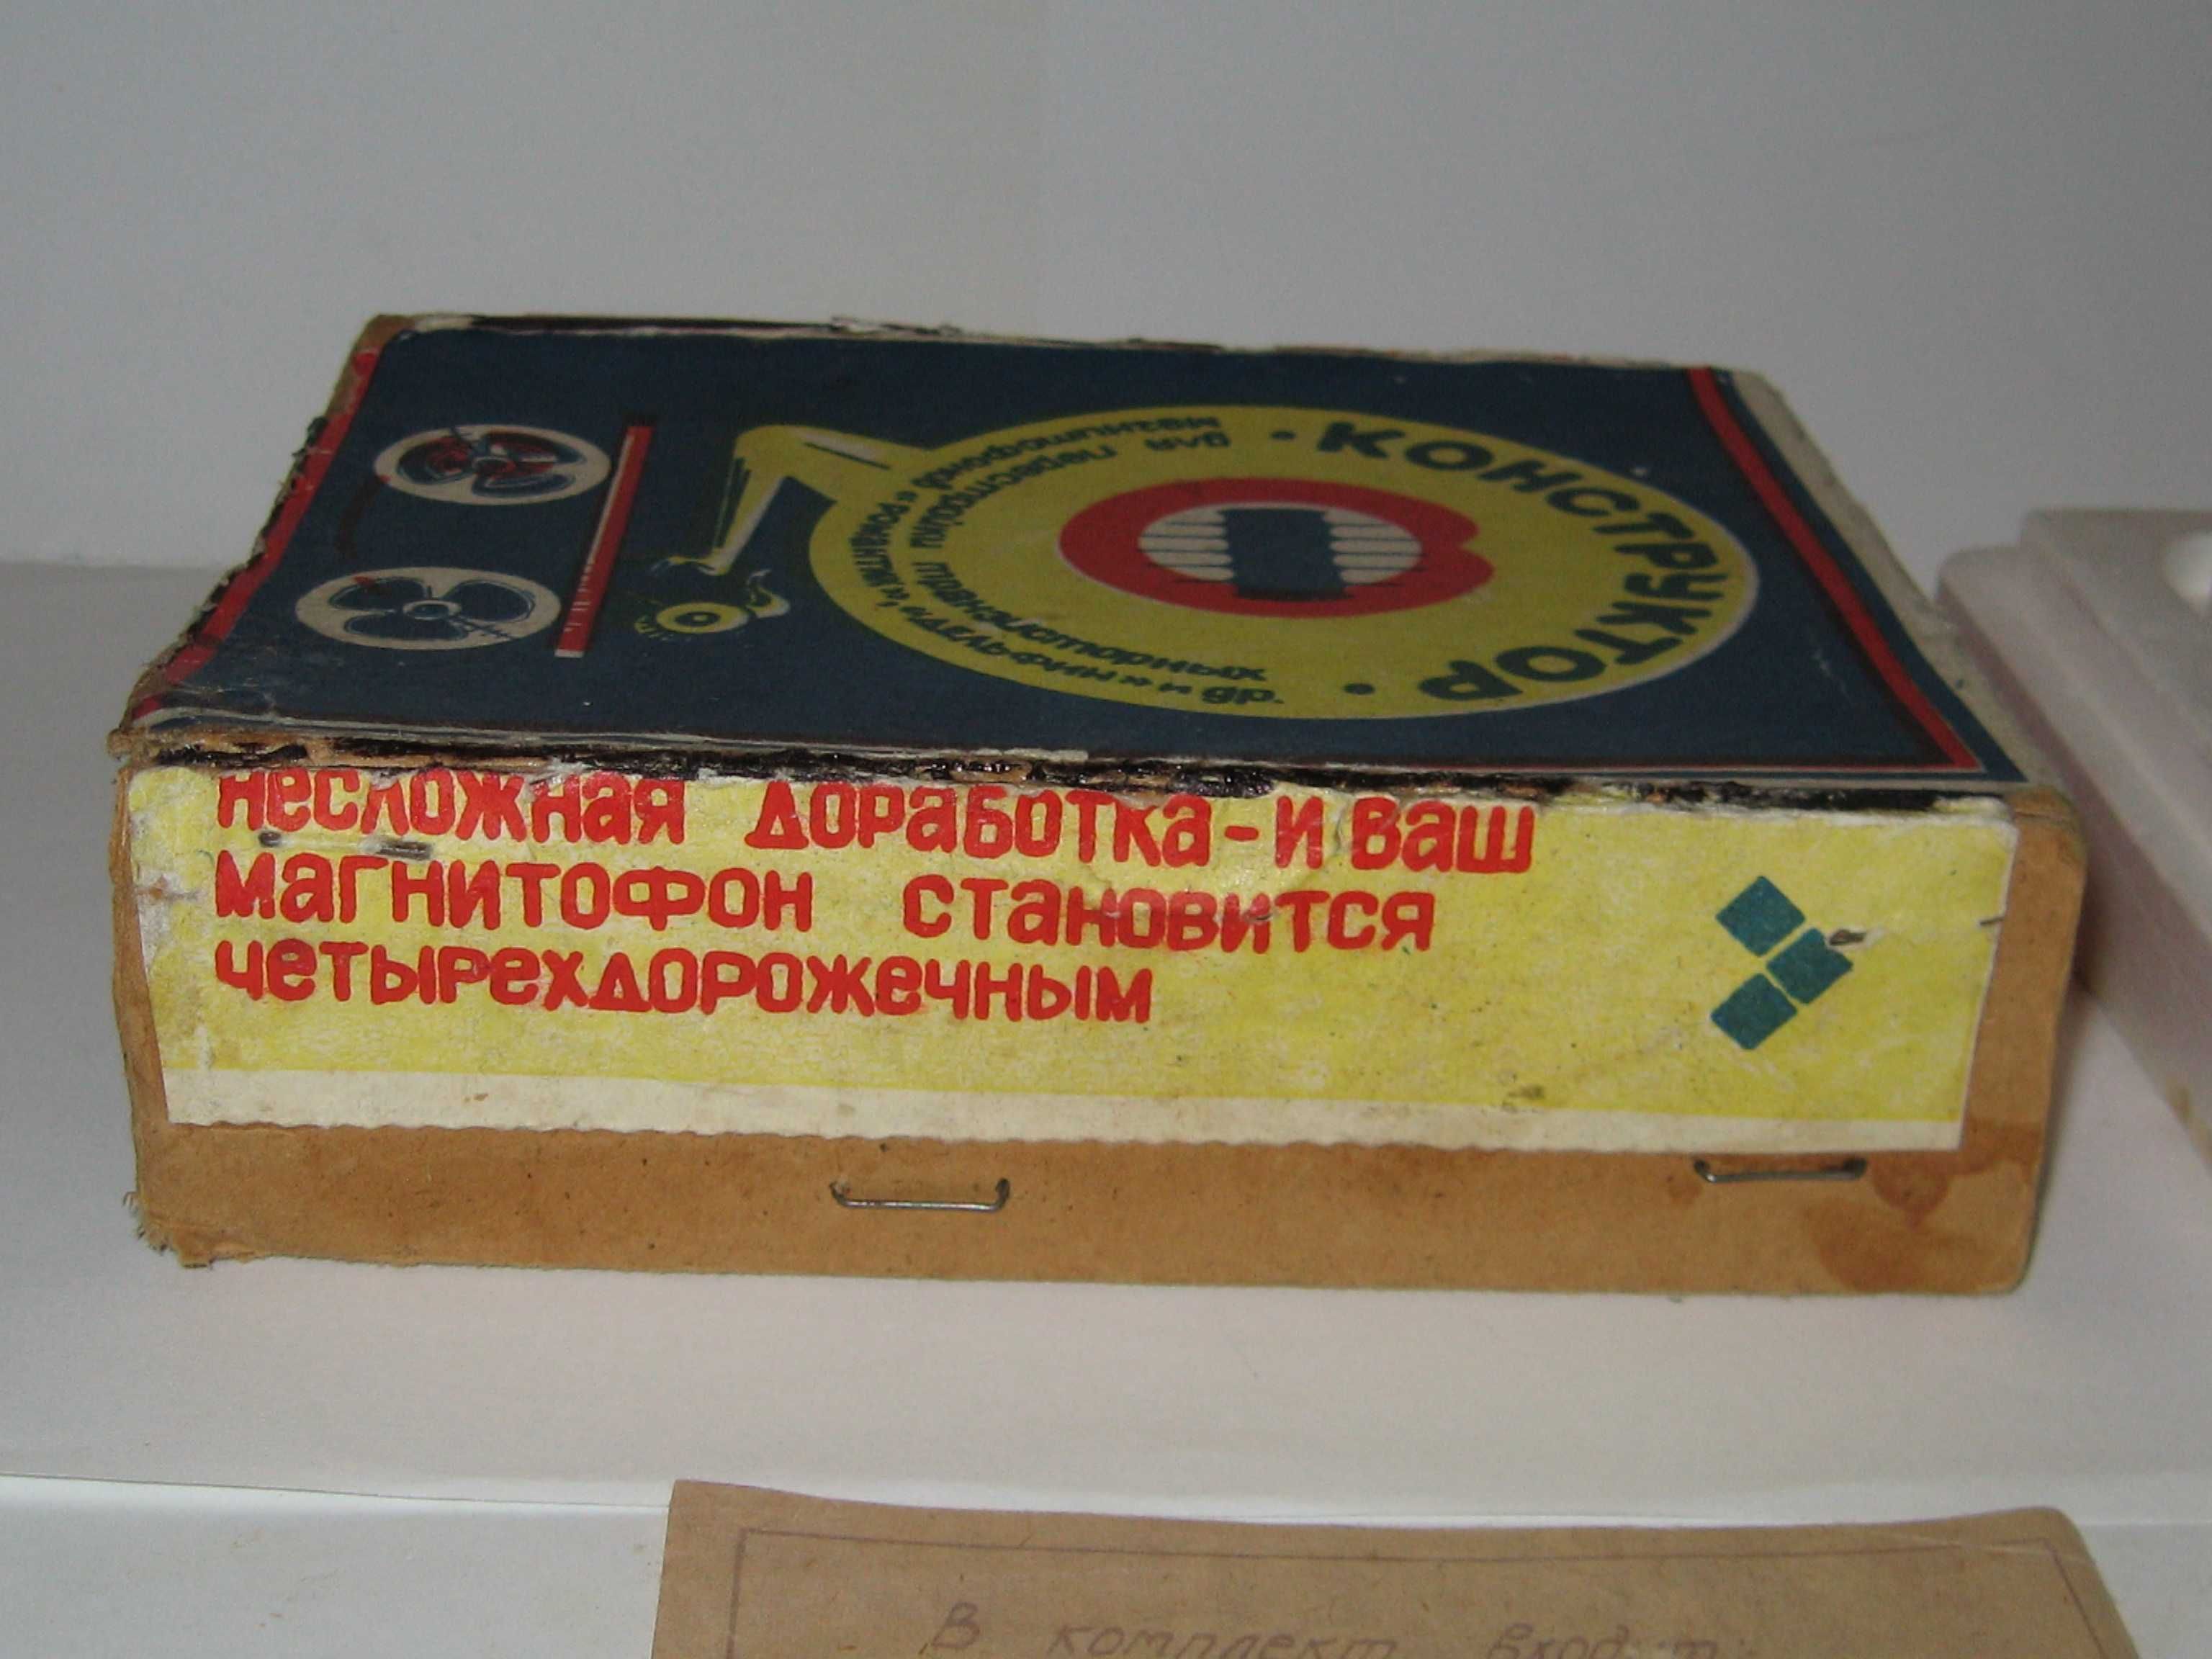 Головка для магнитофона конструктор для перестройки магнитофон СССР